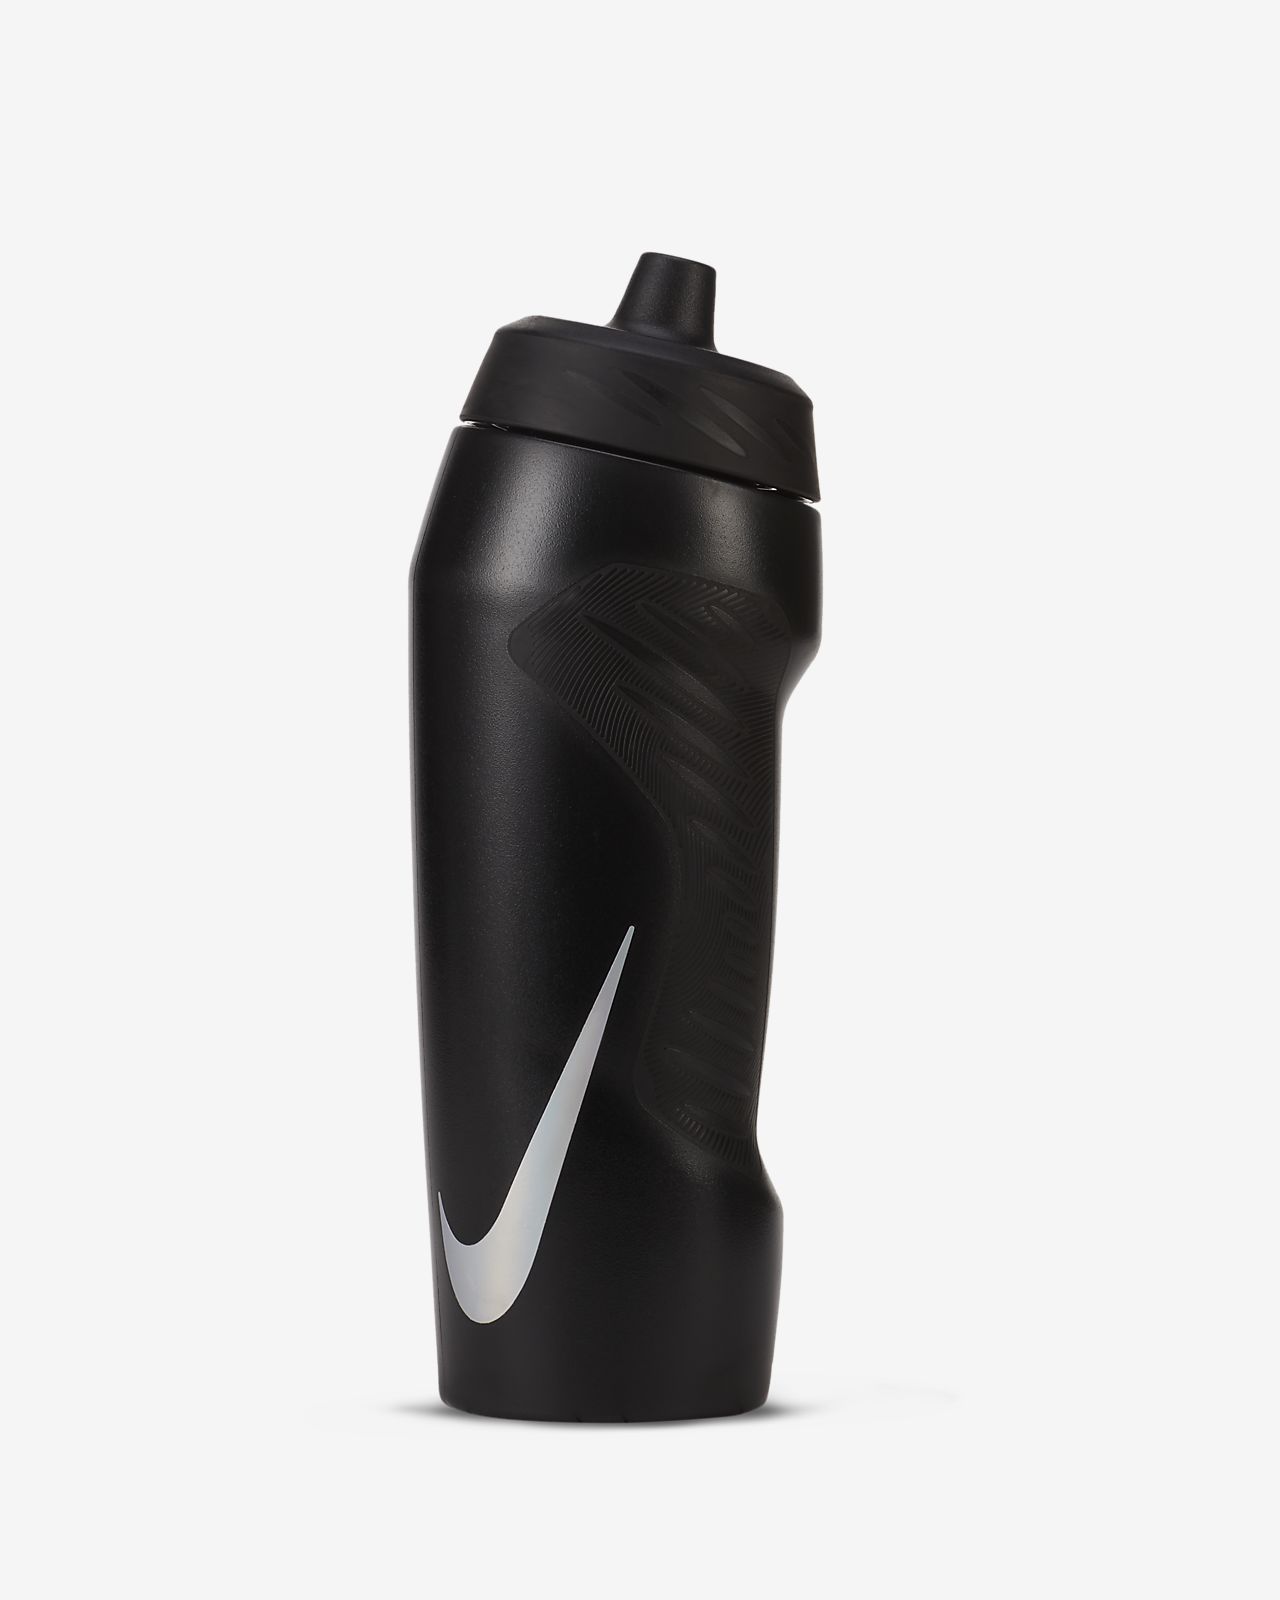 Nike 710ml approx. HyperFuel Water 